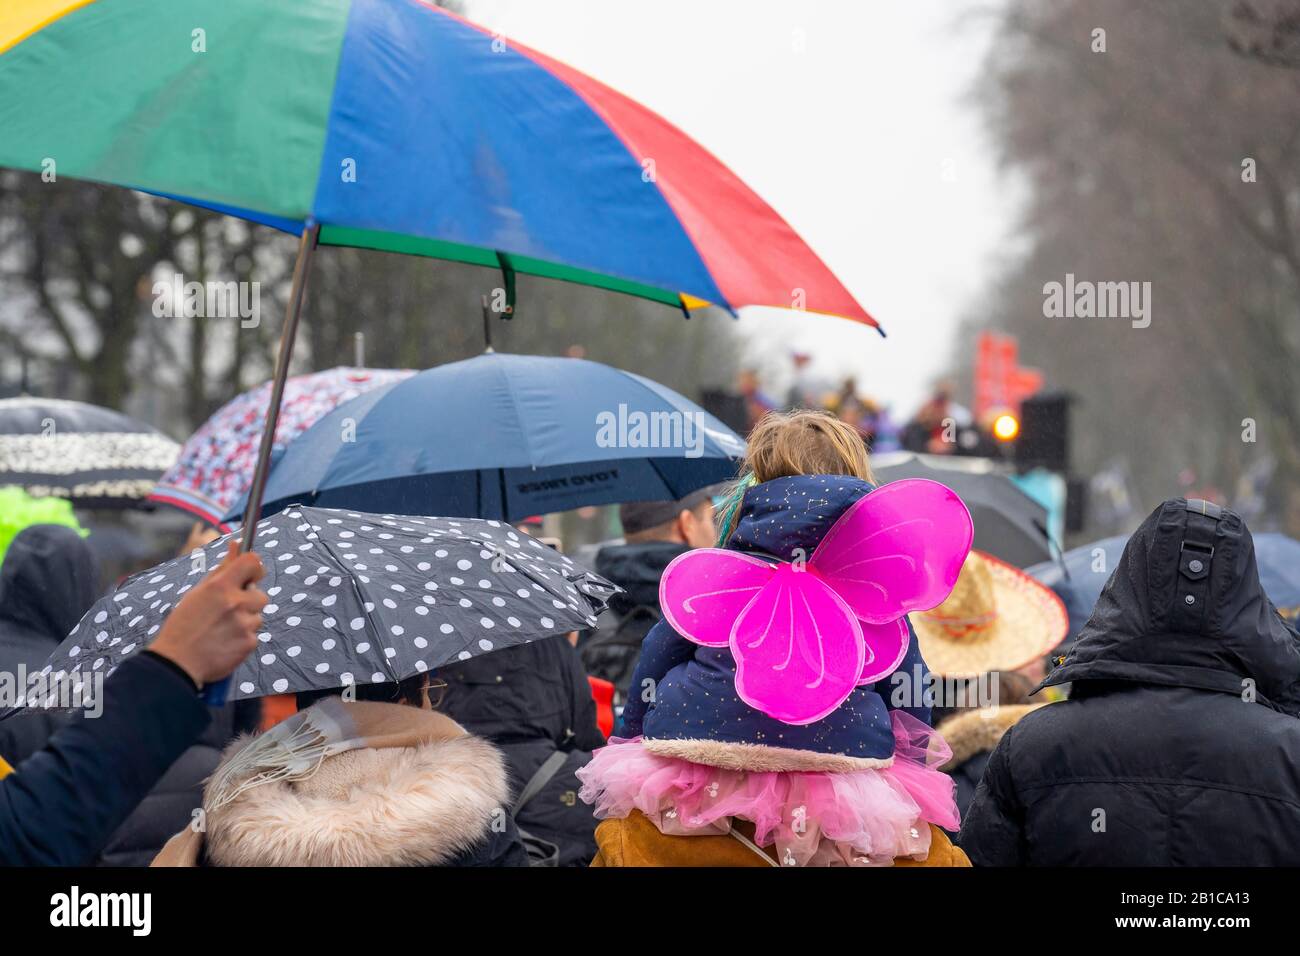 Rose Lunedi processione a DŸsseldorf, carnevale di strada, tempo piovoso, Foto Stock